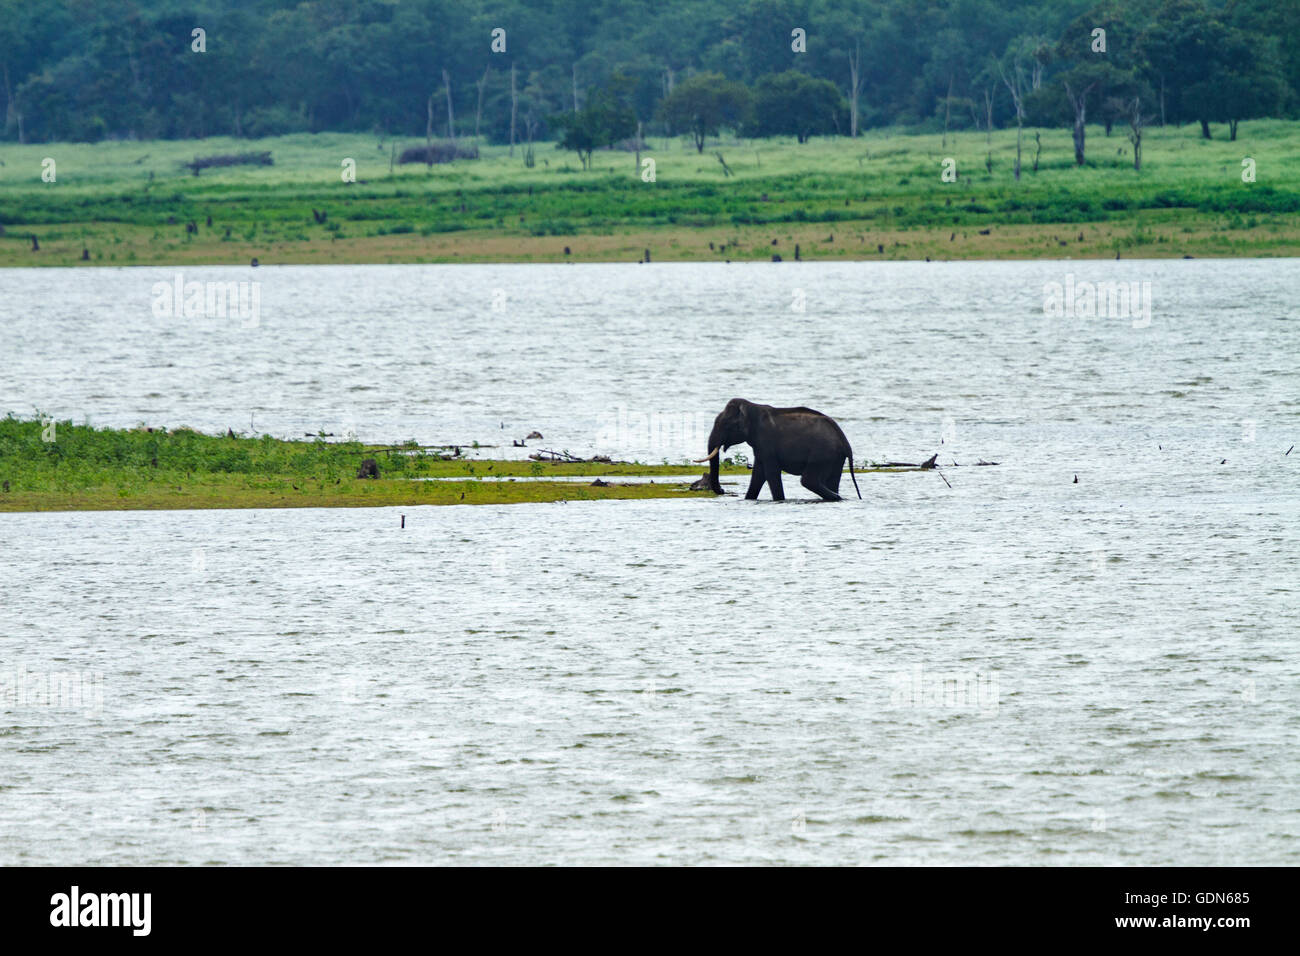 Wild Elephant bathing in lake of Kabini national park, India. Stock Photo